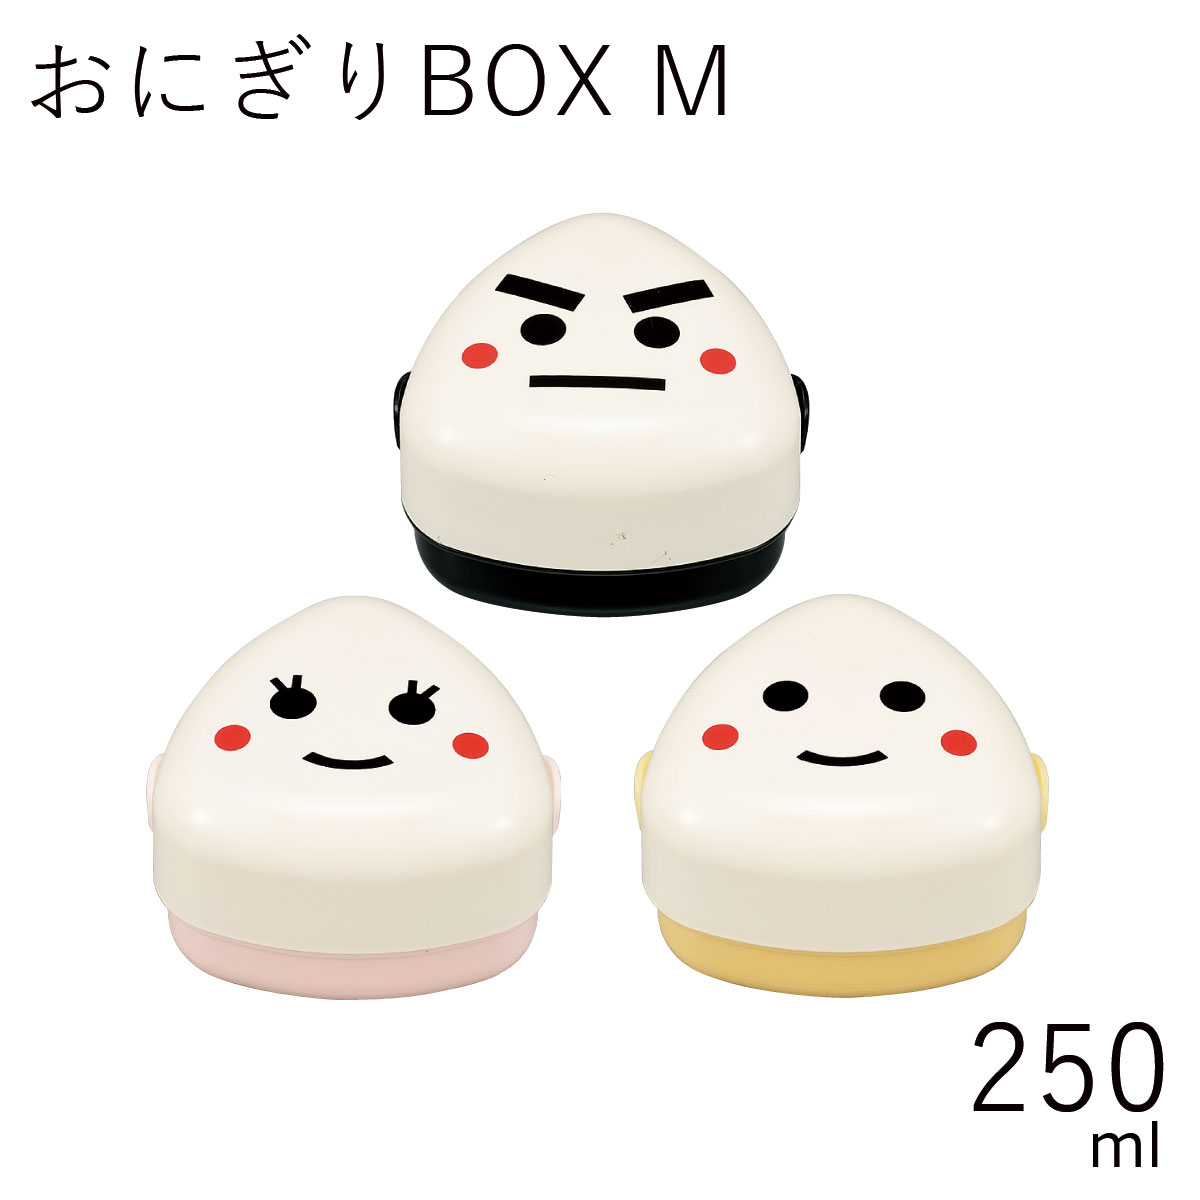 弁当箱”HAKOYA おにぎりBOX M 250ml”のりお こうめ たまおにぎり1個とおかずが入れれる日本製おにぎり専用 弁当箱 おしゃれ LUNCH BOX